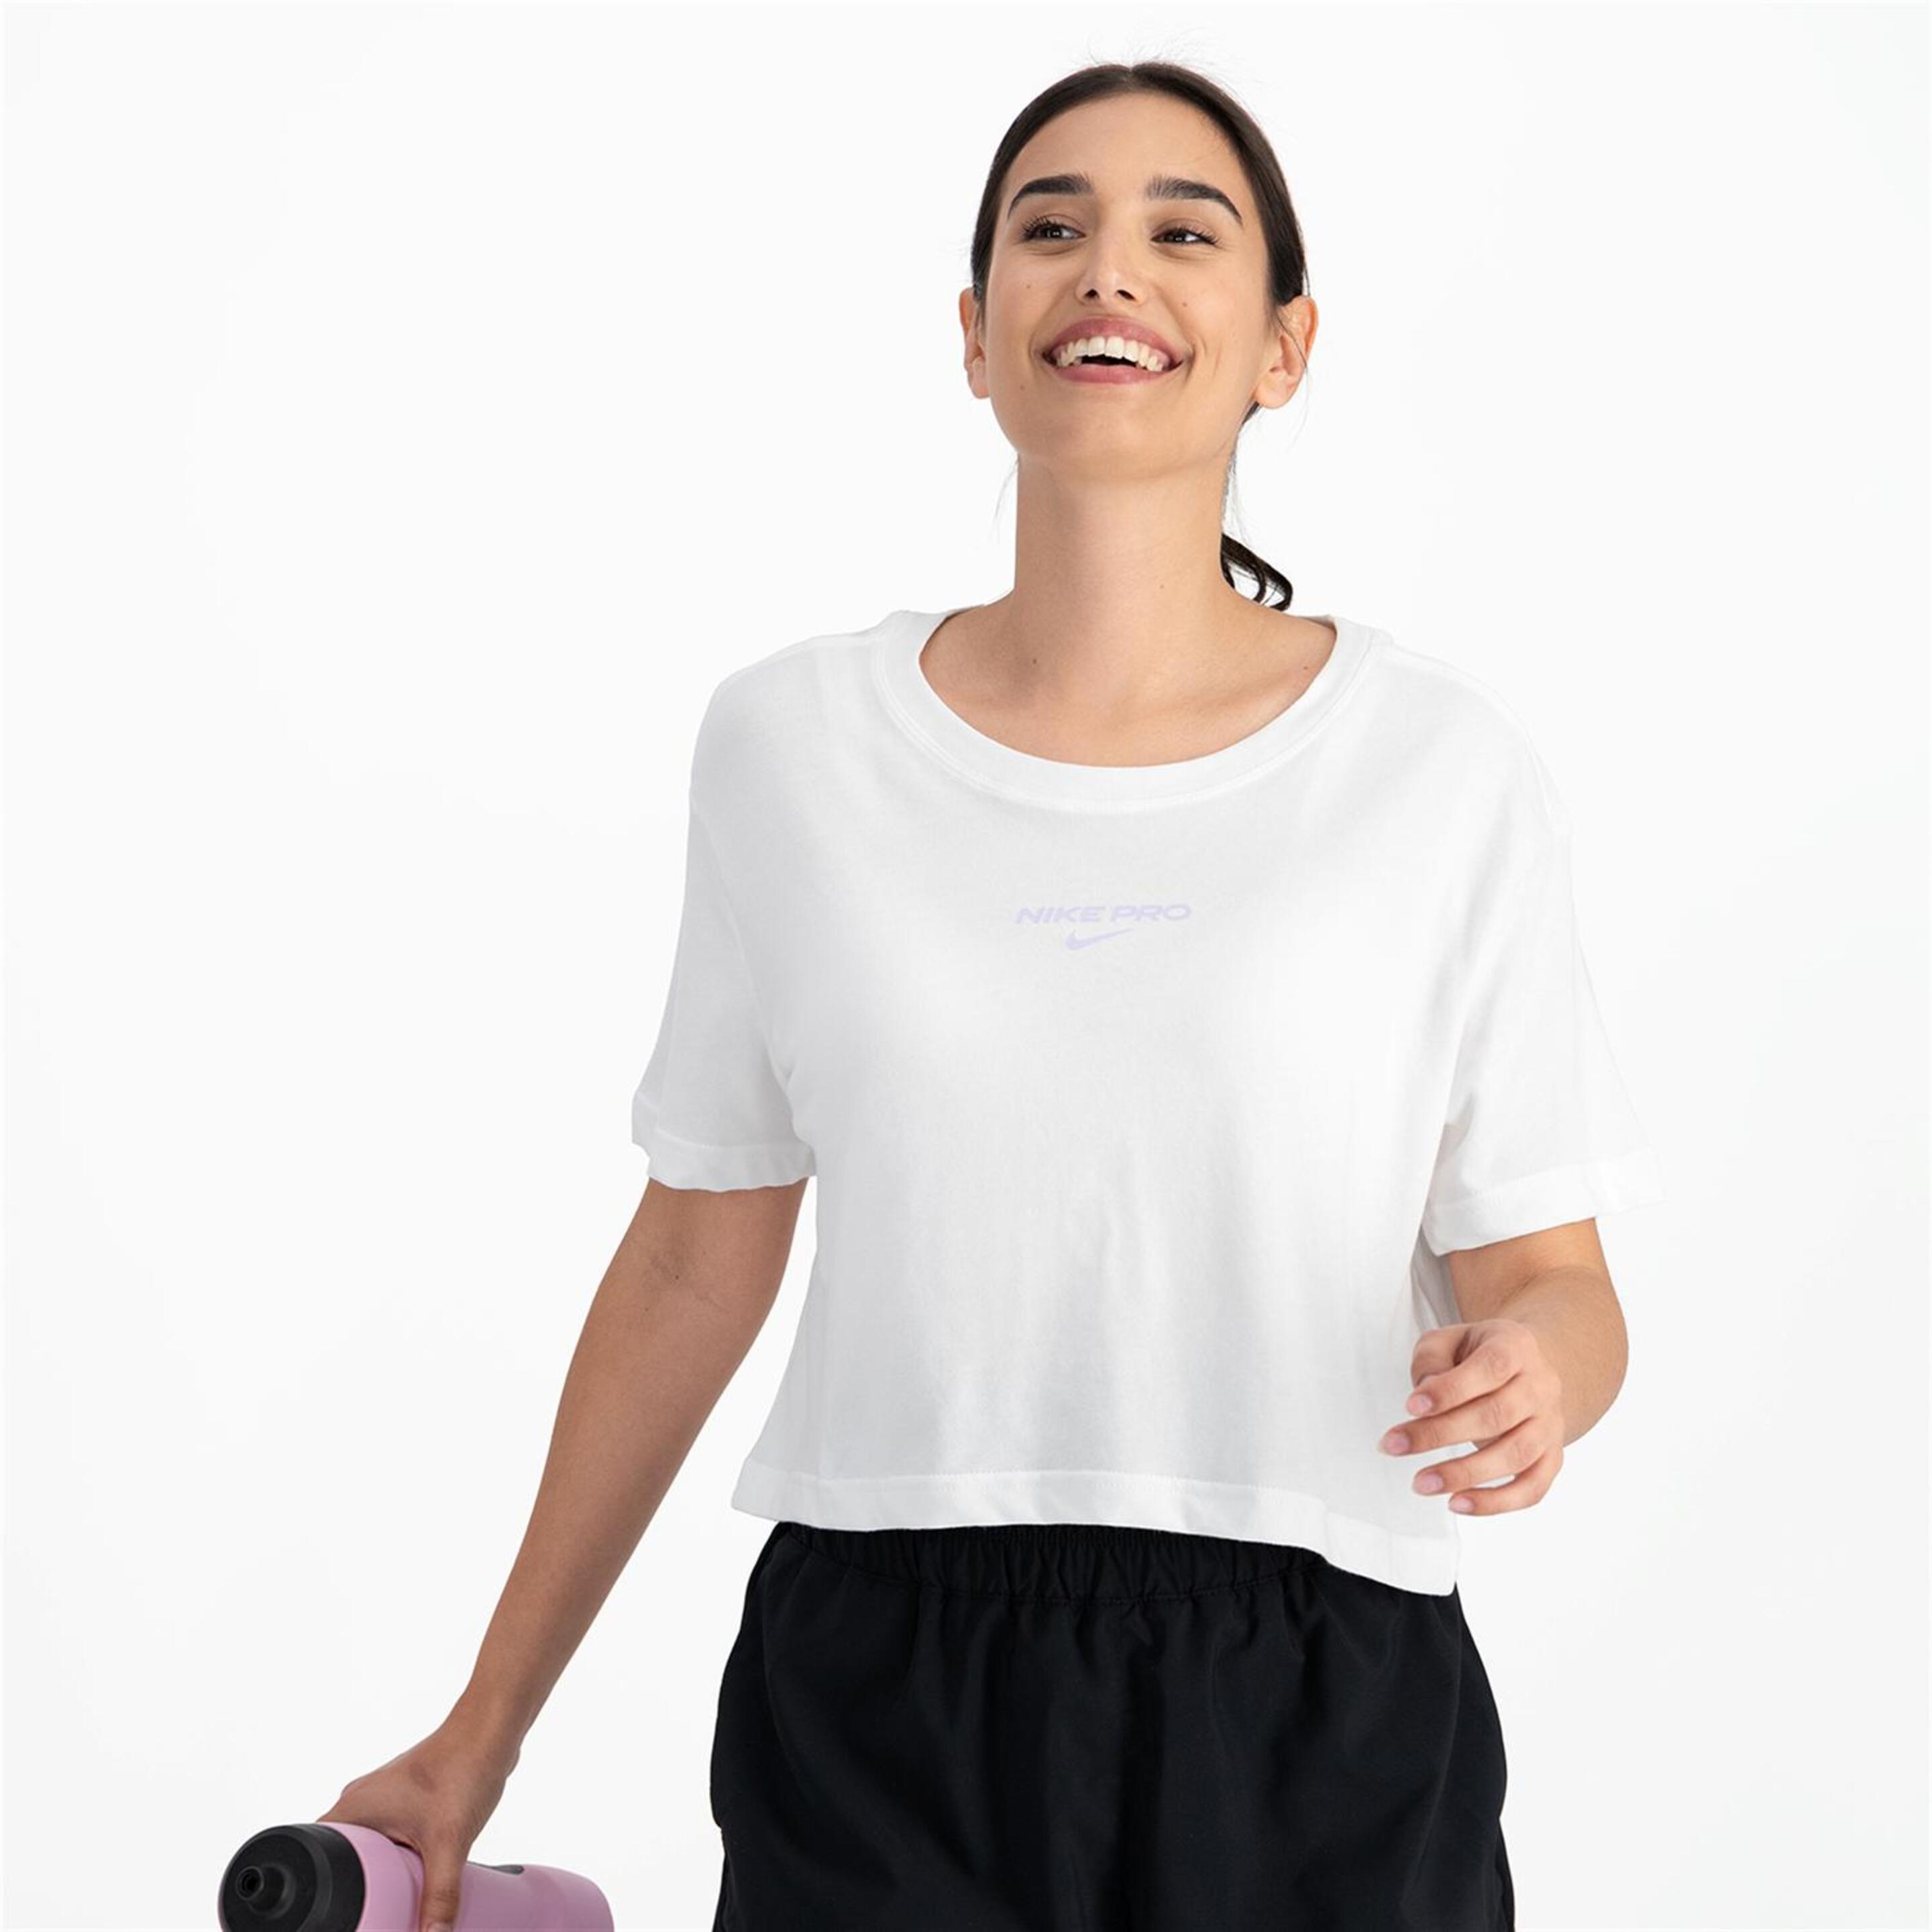 Nike Pro - blanco - Camiseta Boxy Mujer